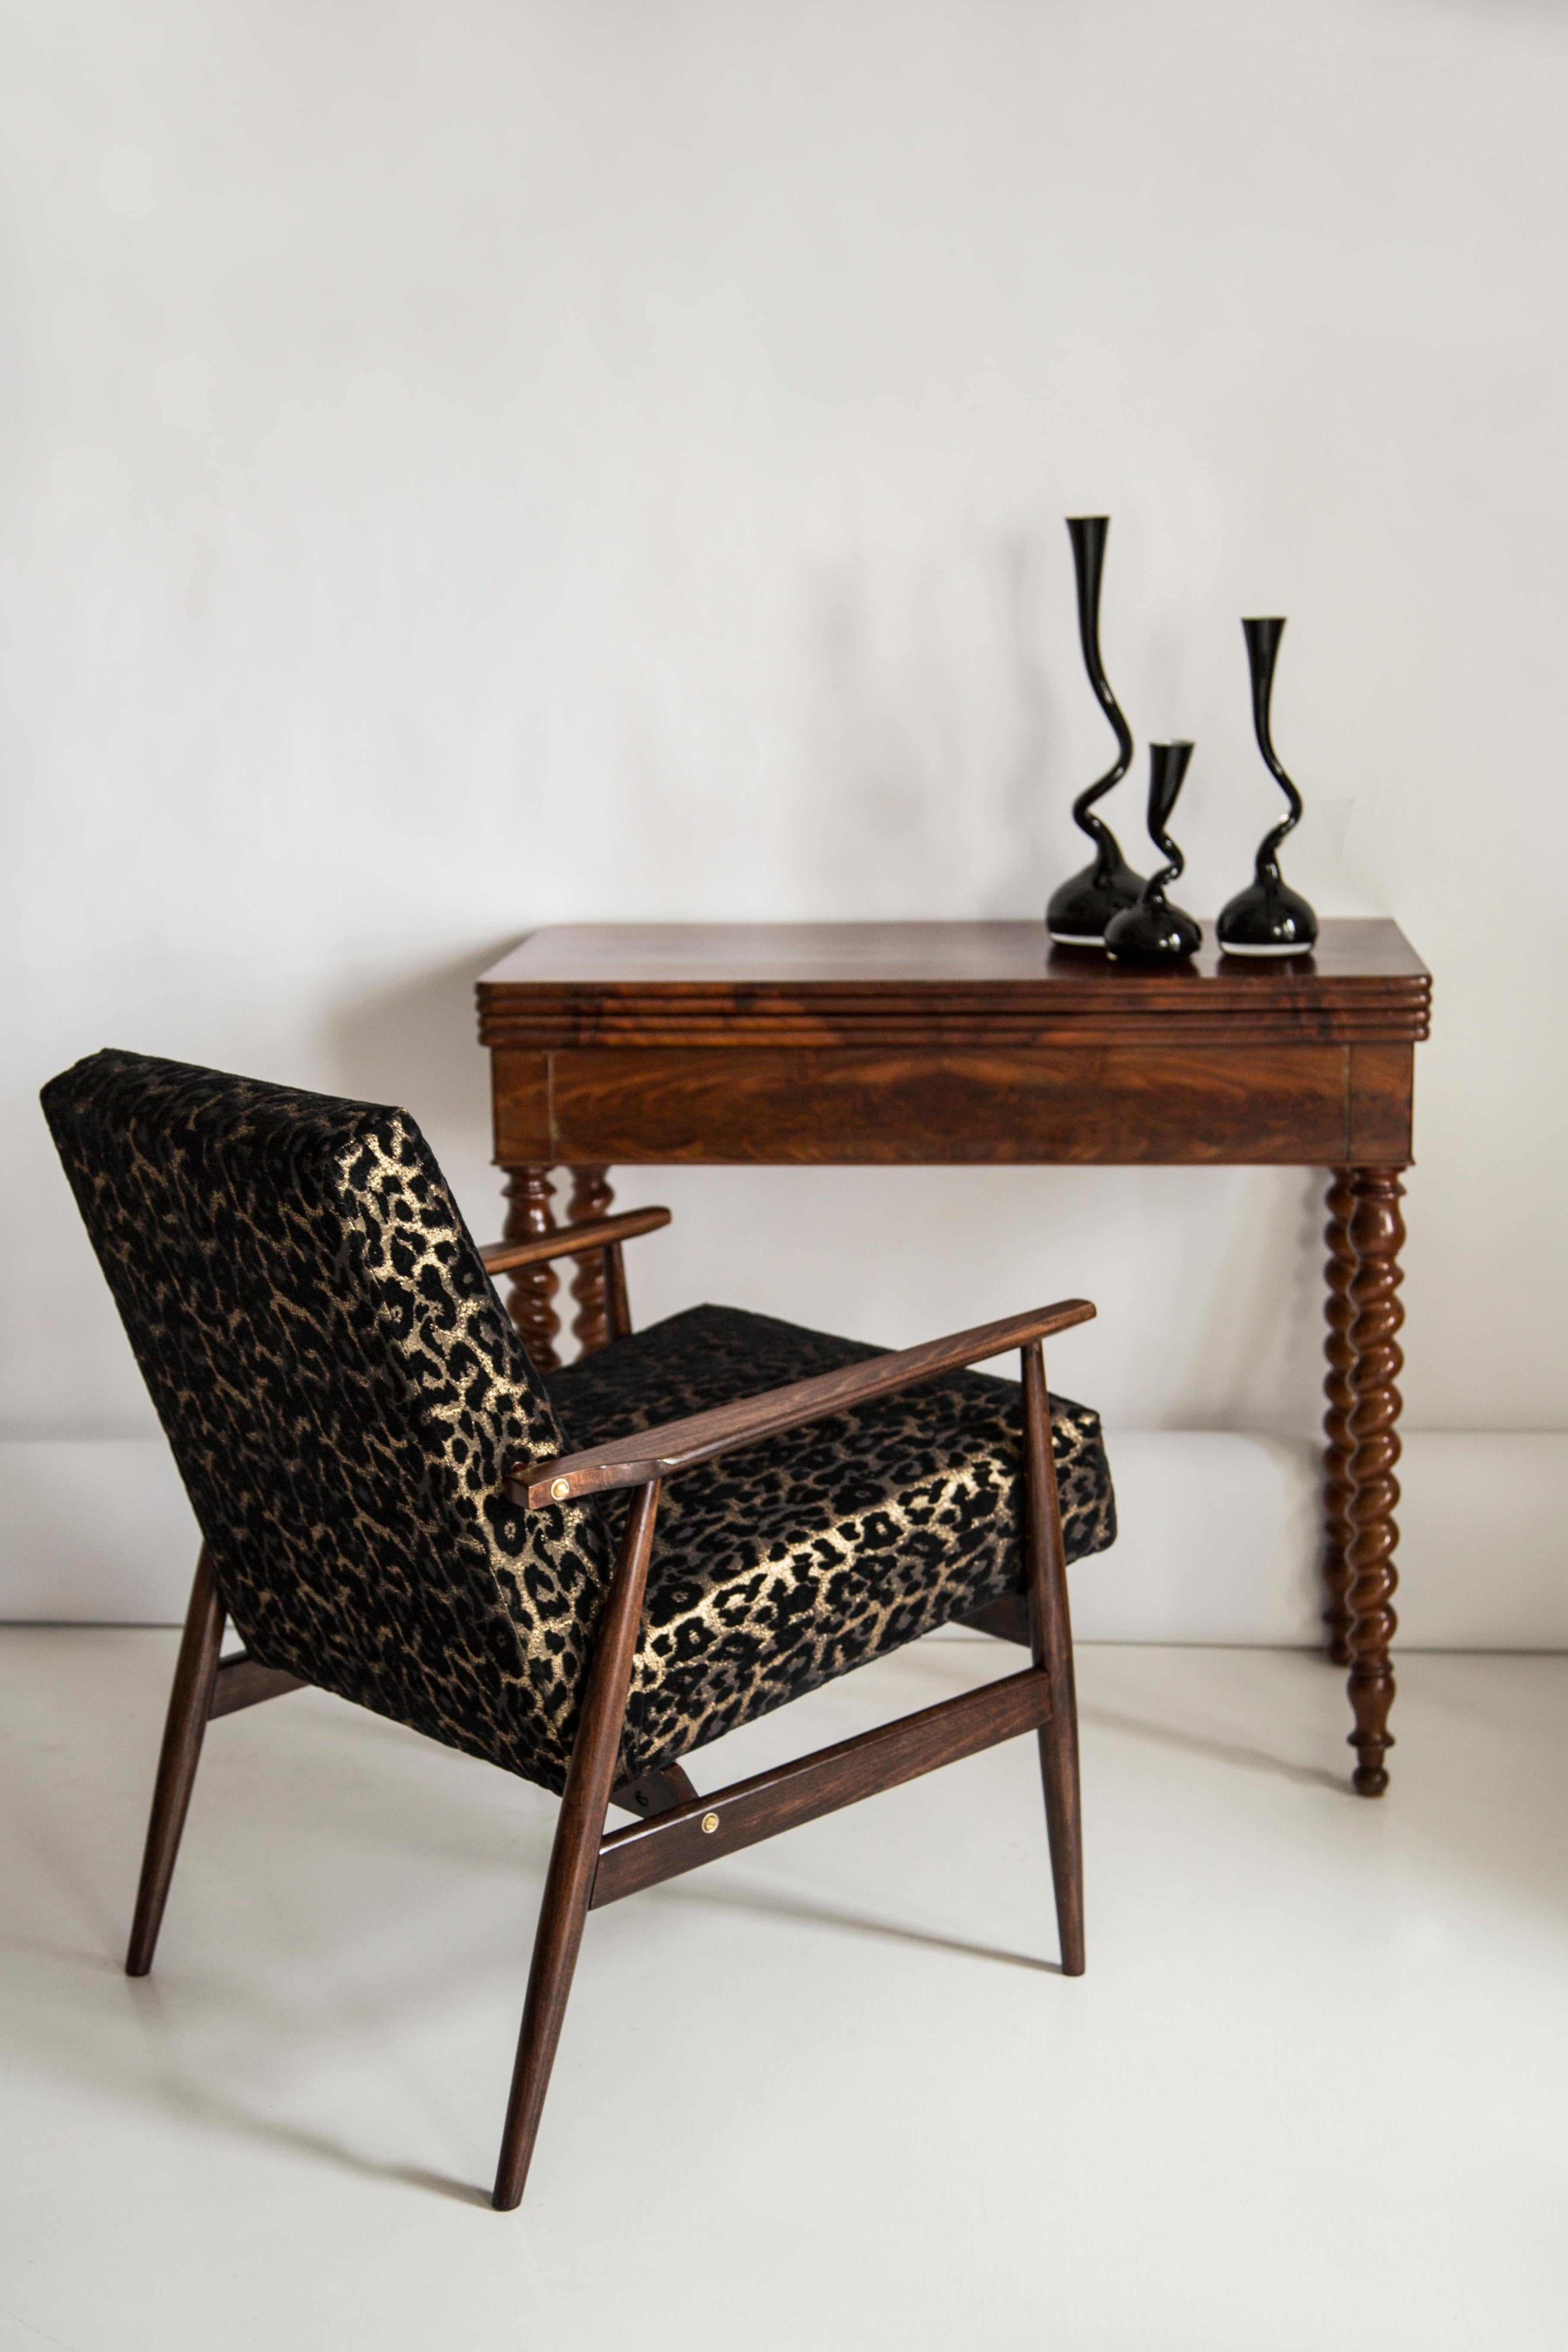 Ein schöner, restaurierter Sessel von Henryk Lis. Möbel nach kompletter Renovierung durch Schreiner und Polsterei. Der Stoff, mit dem Rückenlehne und Sitzfläche bezogen sind, ist ein hochwertiger italienischer Samtbezug mit Leopardenmuster. Der